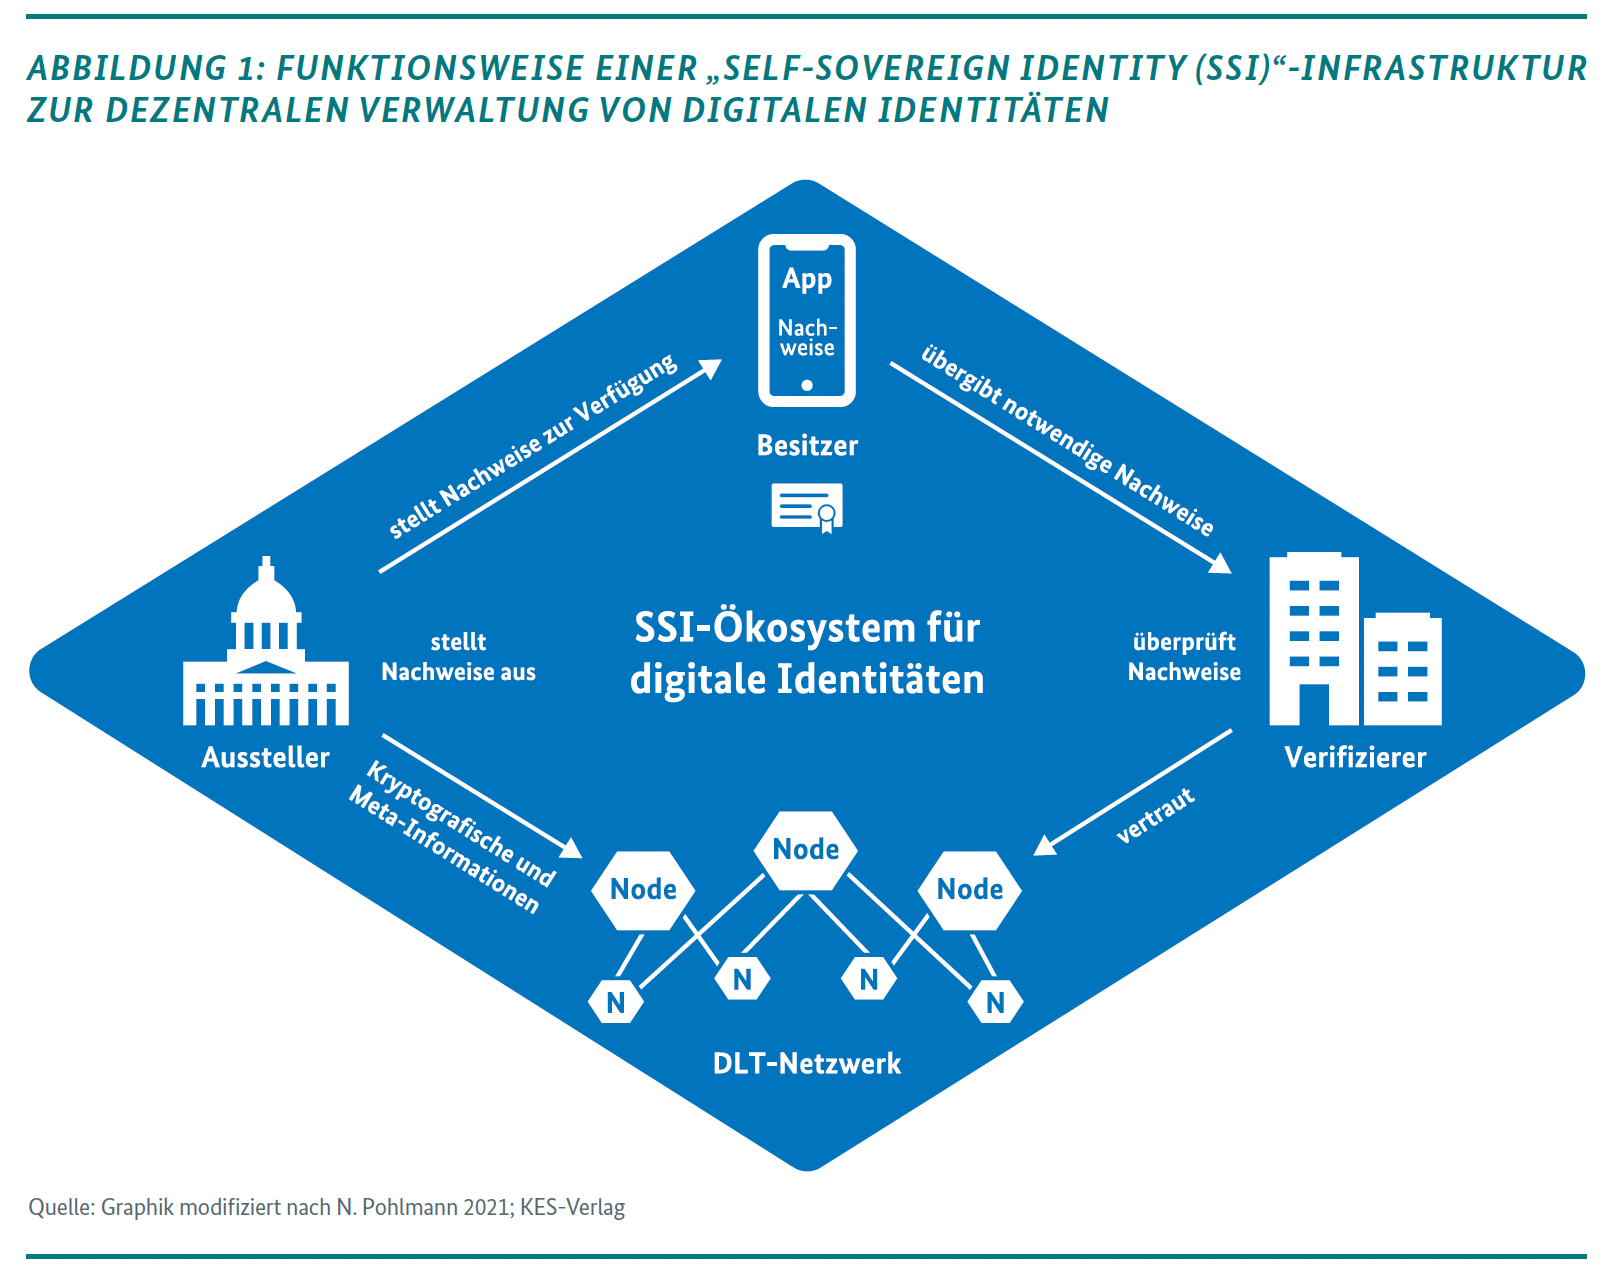 Funktionsweise einer Self-Sovereign-Identity-Infrastruktur zur dezentralen Verwaltung von digitalen Identitäten